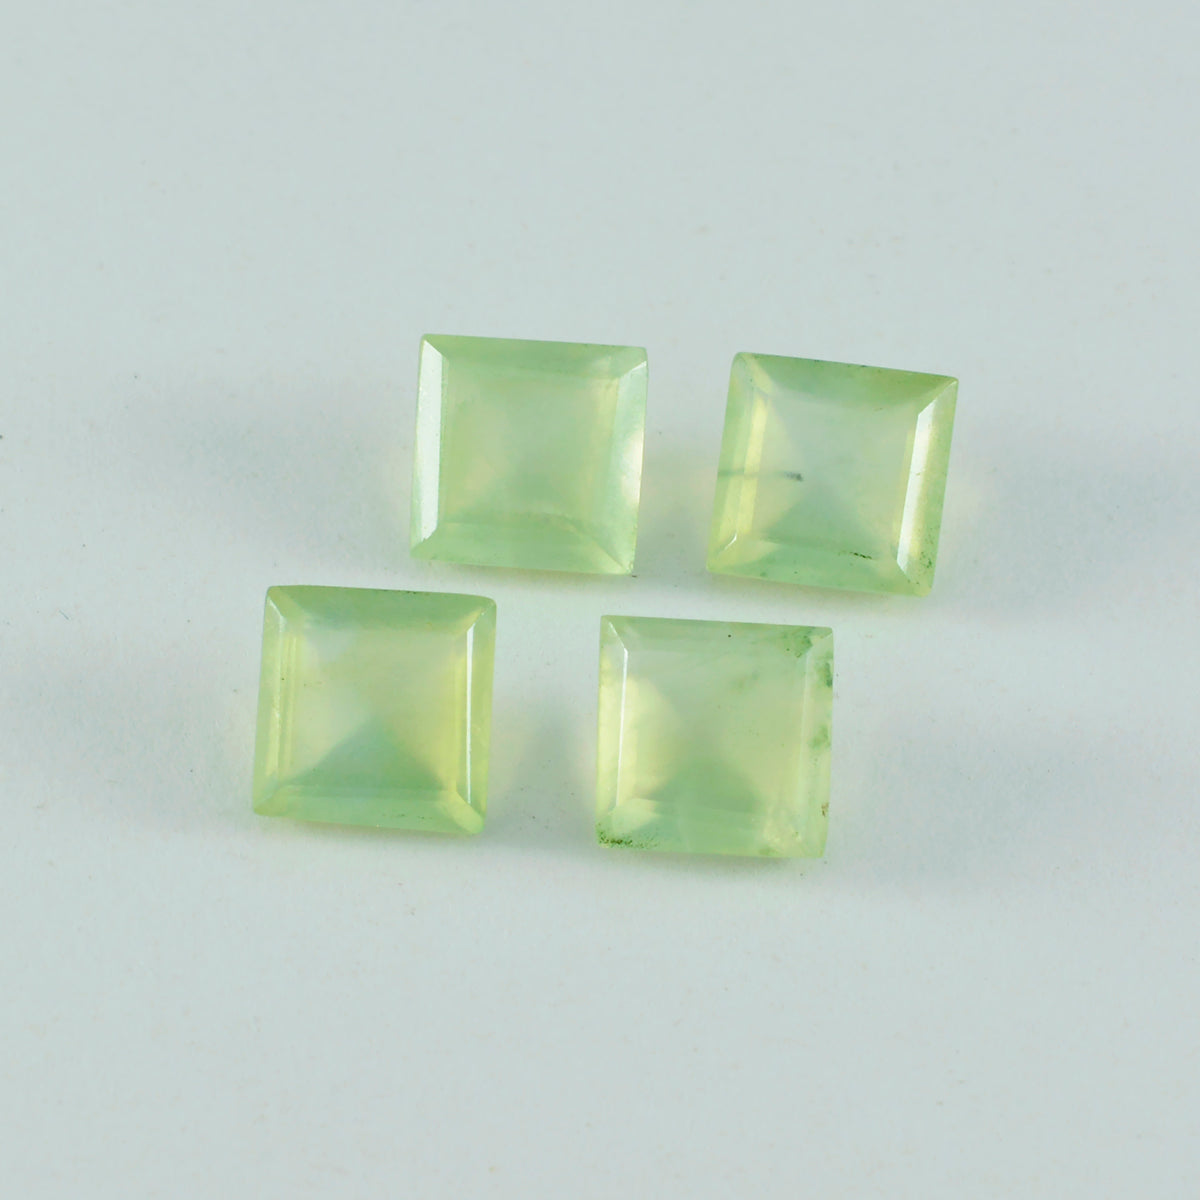 Riyogems 1pc préhnite verte à facettes 10x10mm forme carrée jolie pierre en vrac de qualité